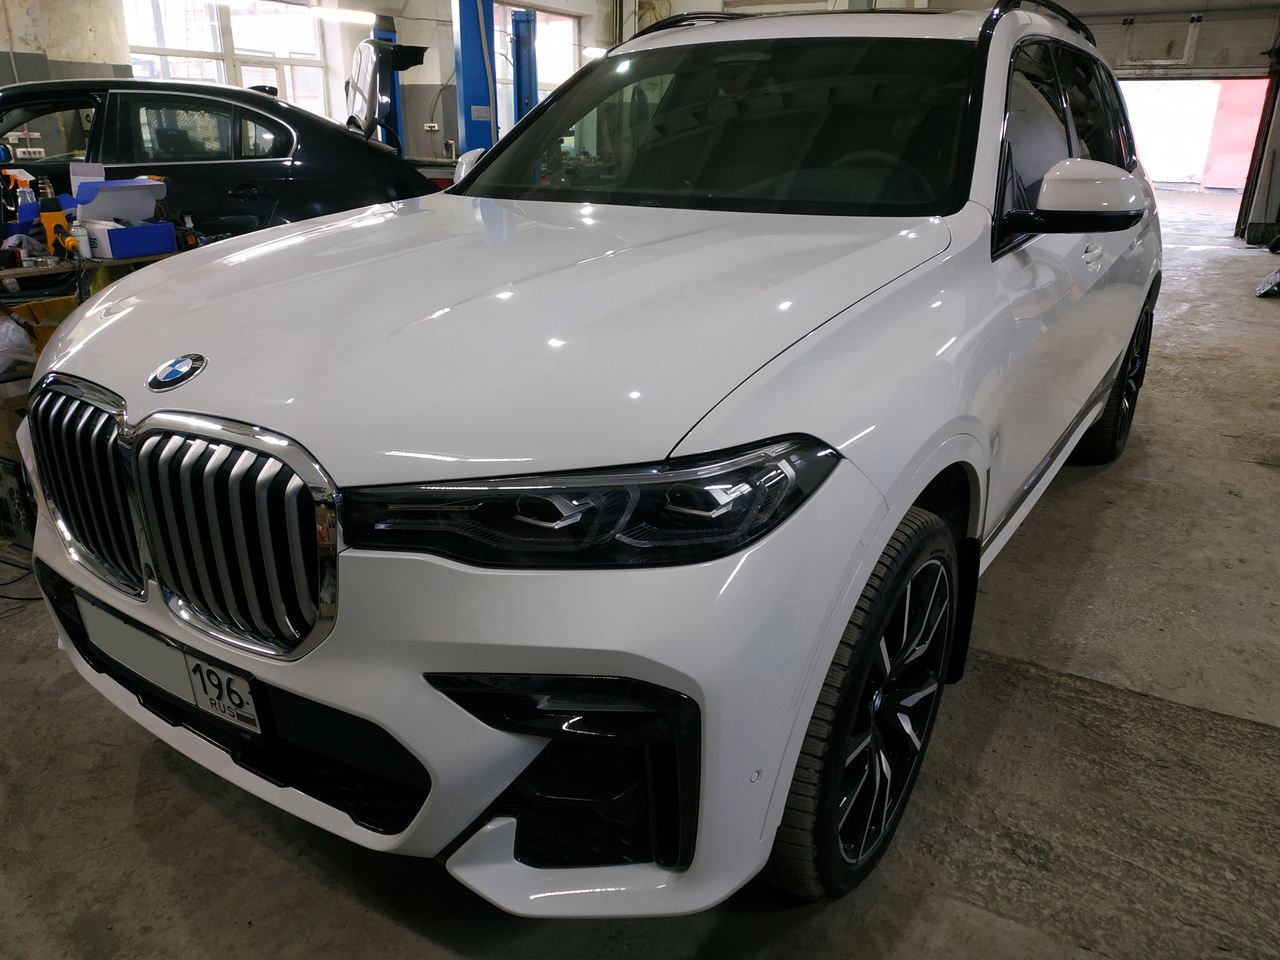 BMW X7 G07 2022 г.в. в сервисе BMWupgrade